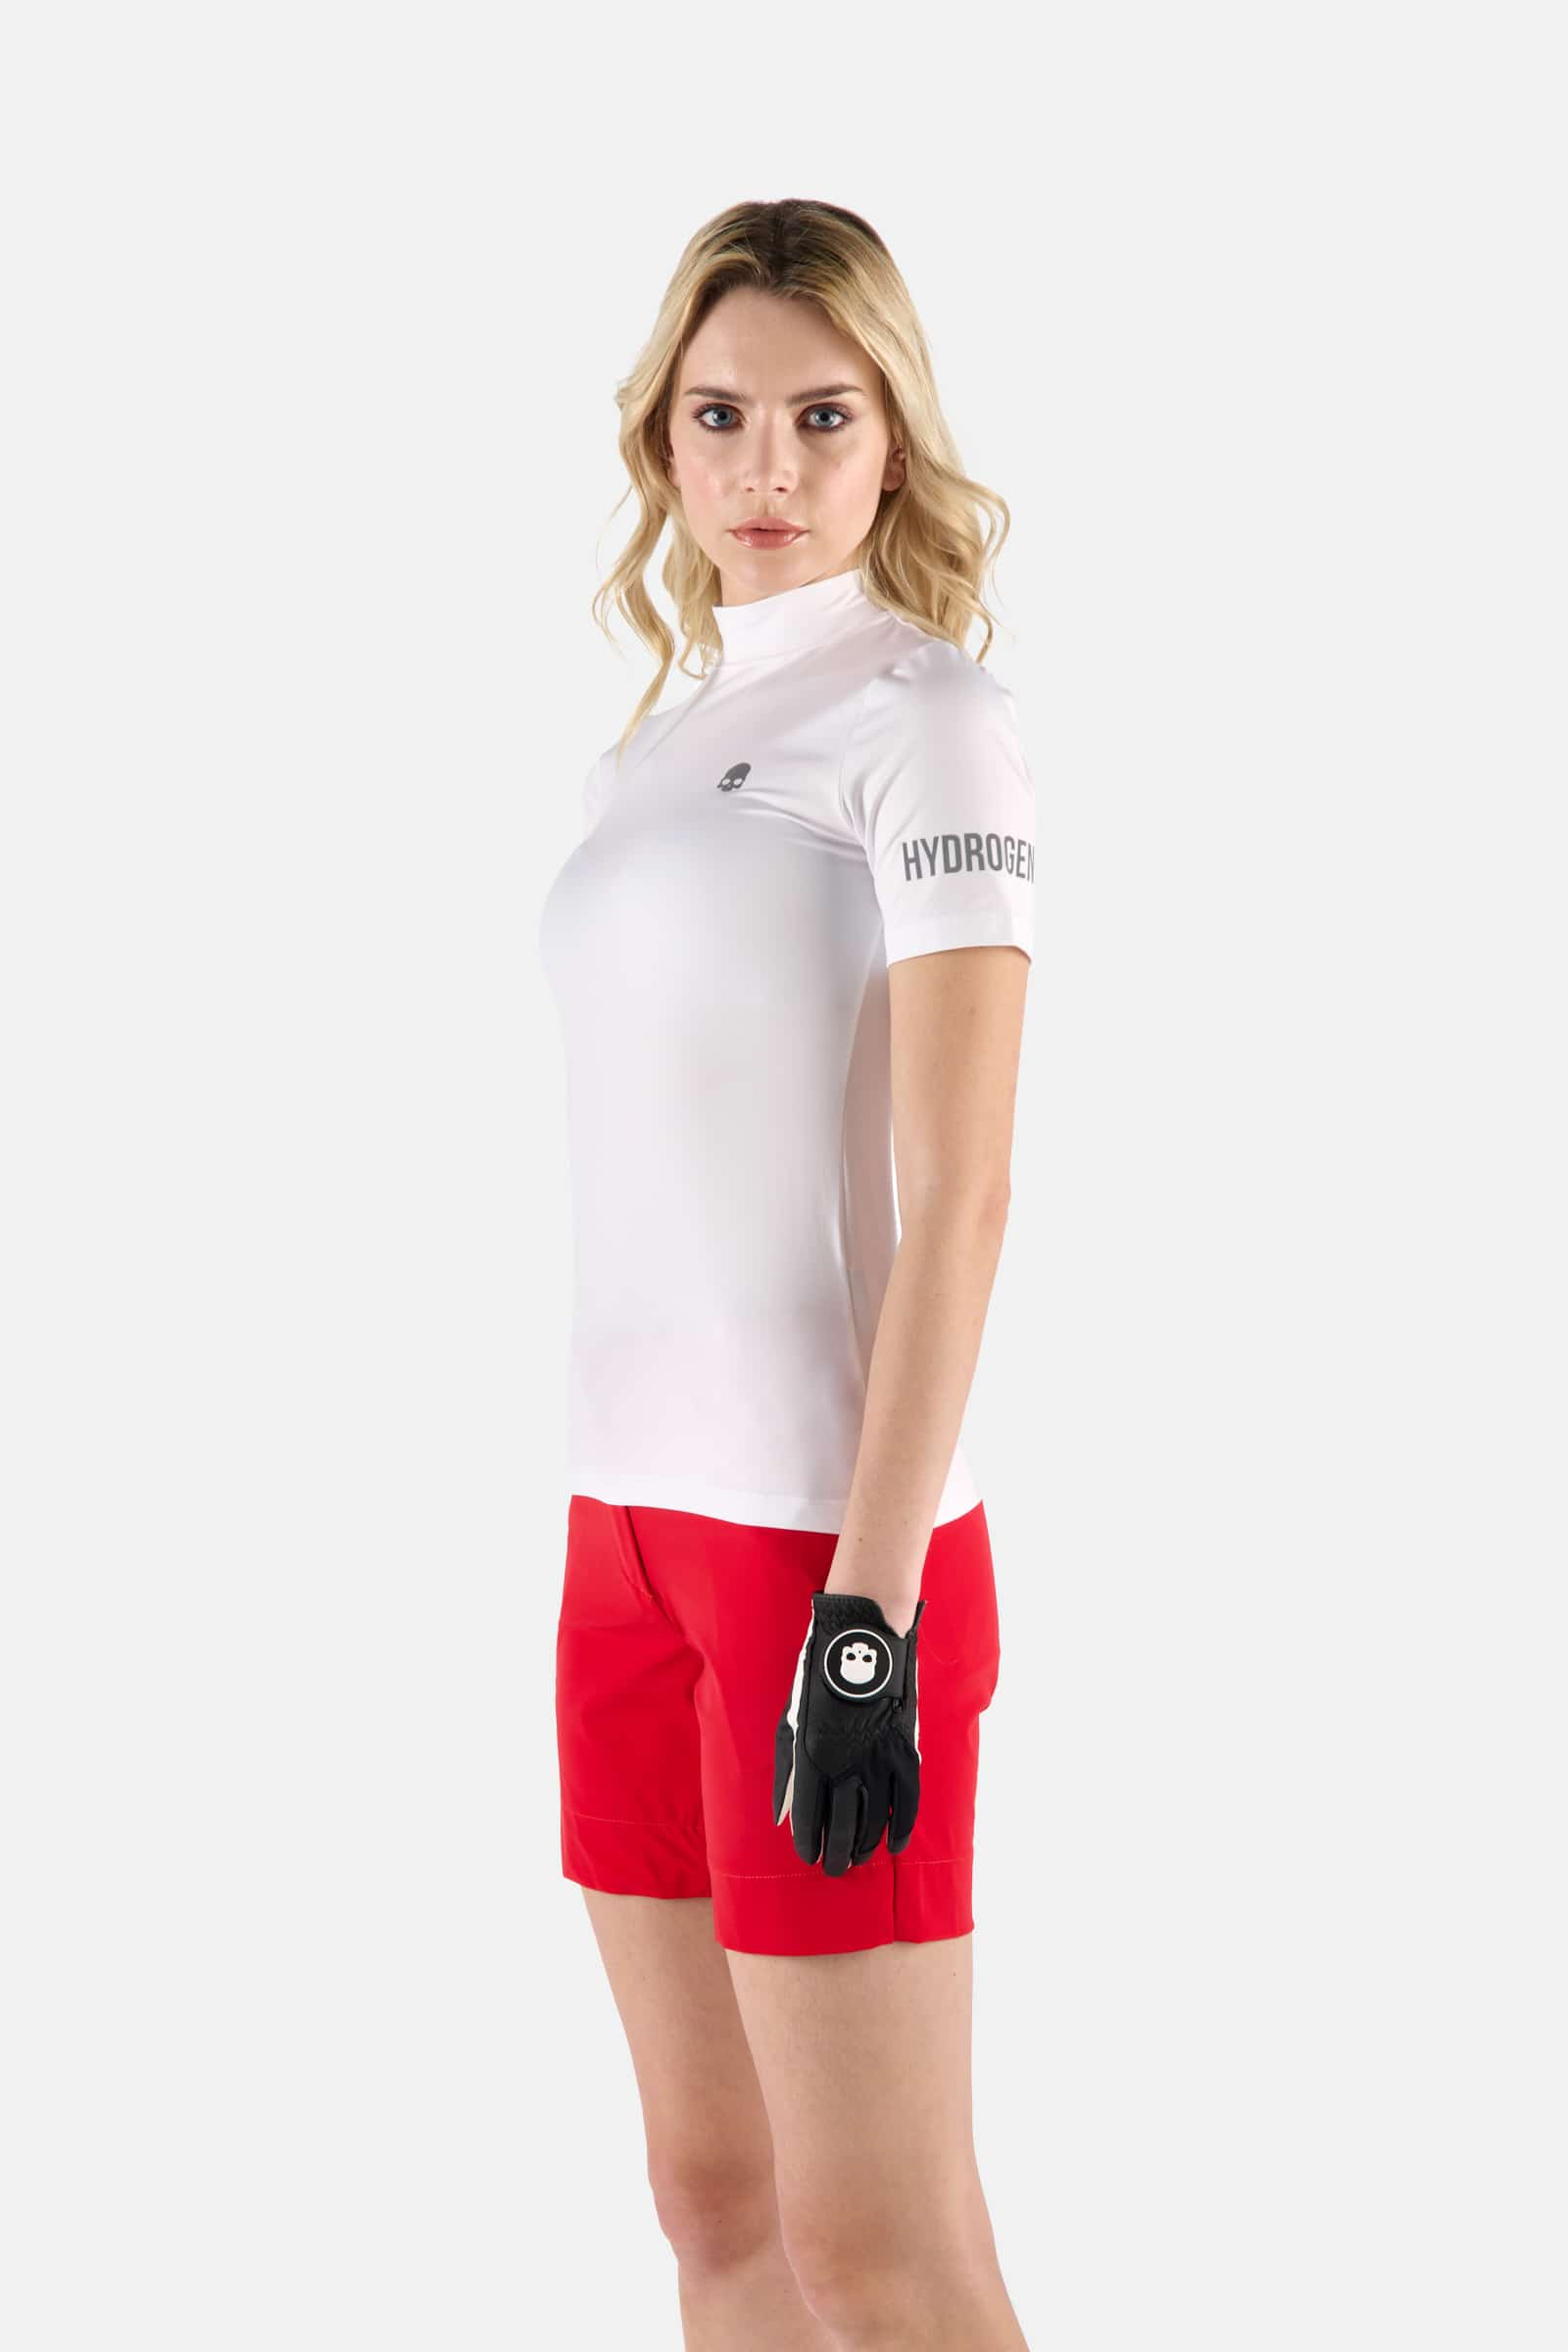 GOLF ROLL NECK - WHITE - Hydrogen - Luxury Sportwear